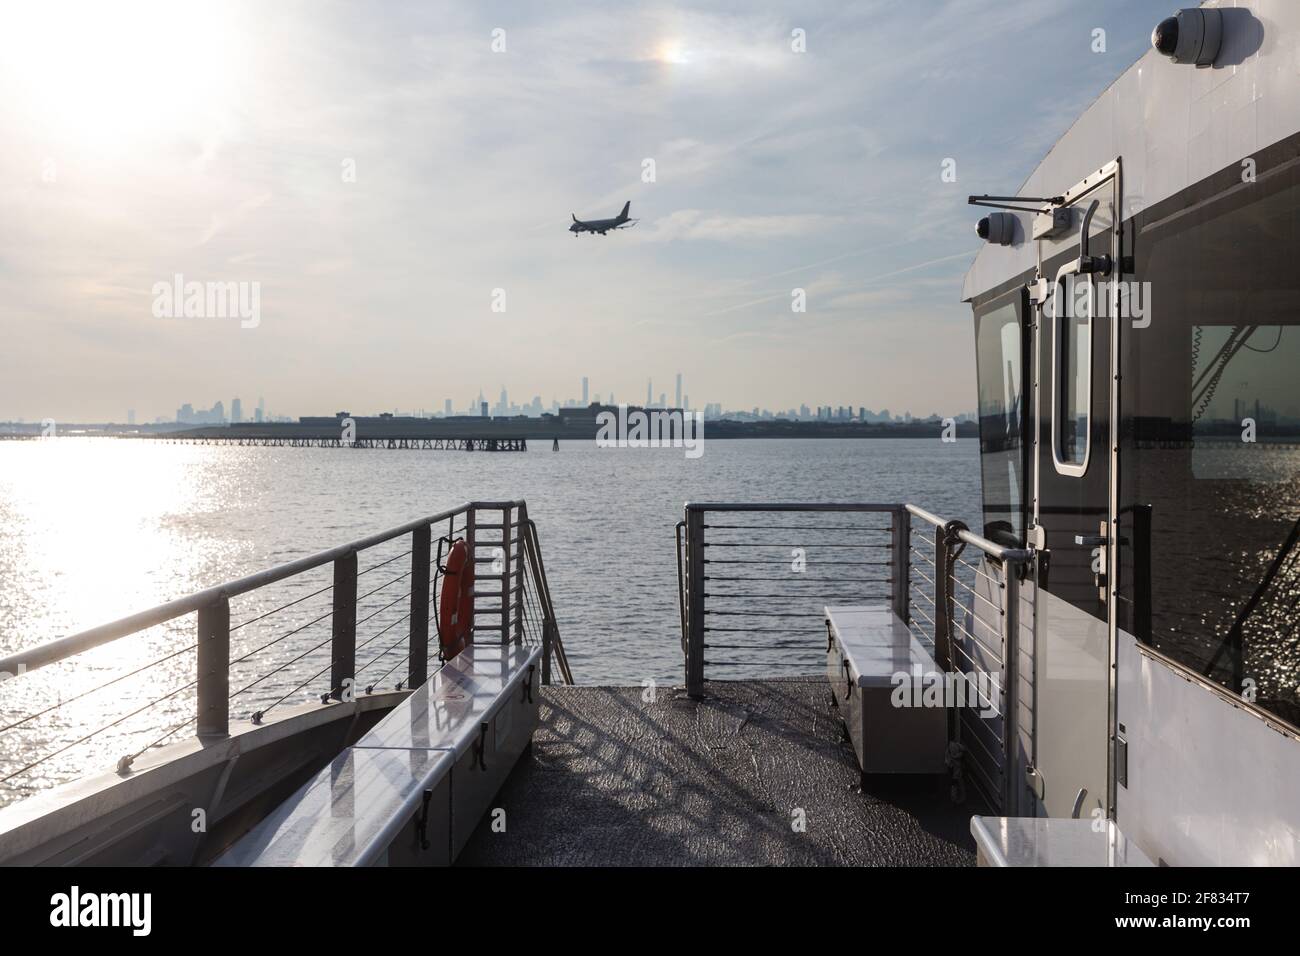 vue d'un avion sur l'eau dans une ville d'un ferry en été Banque D'Images